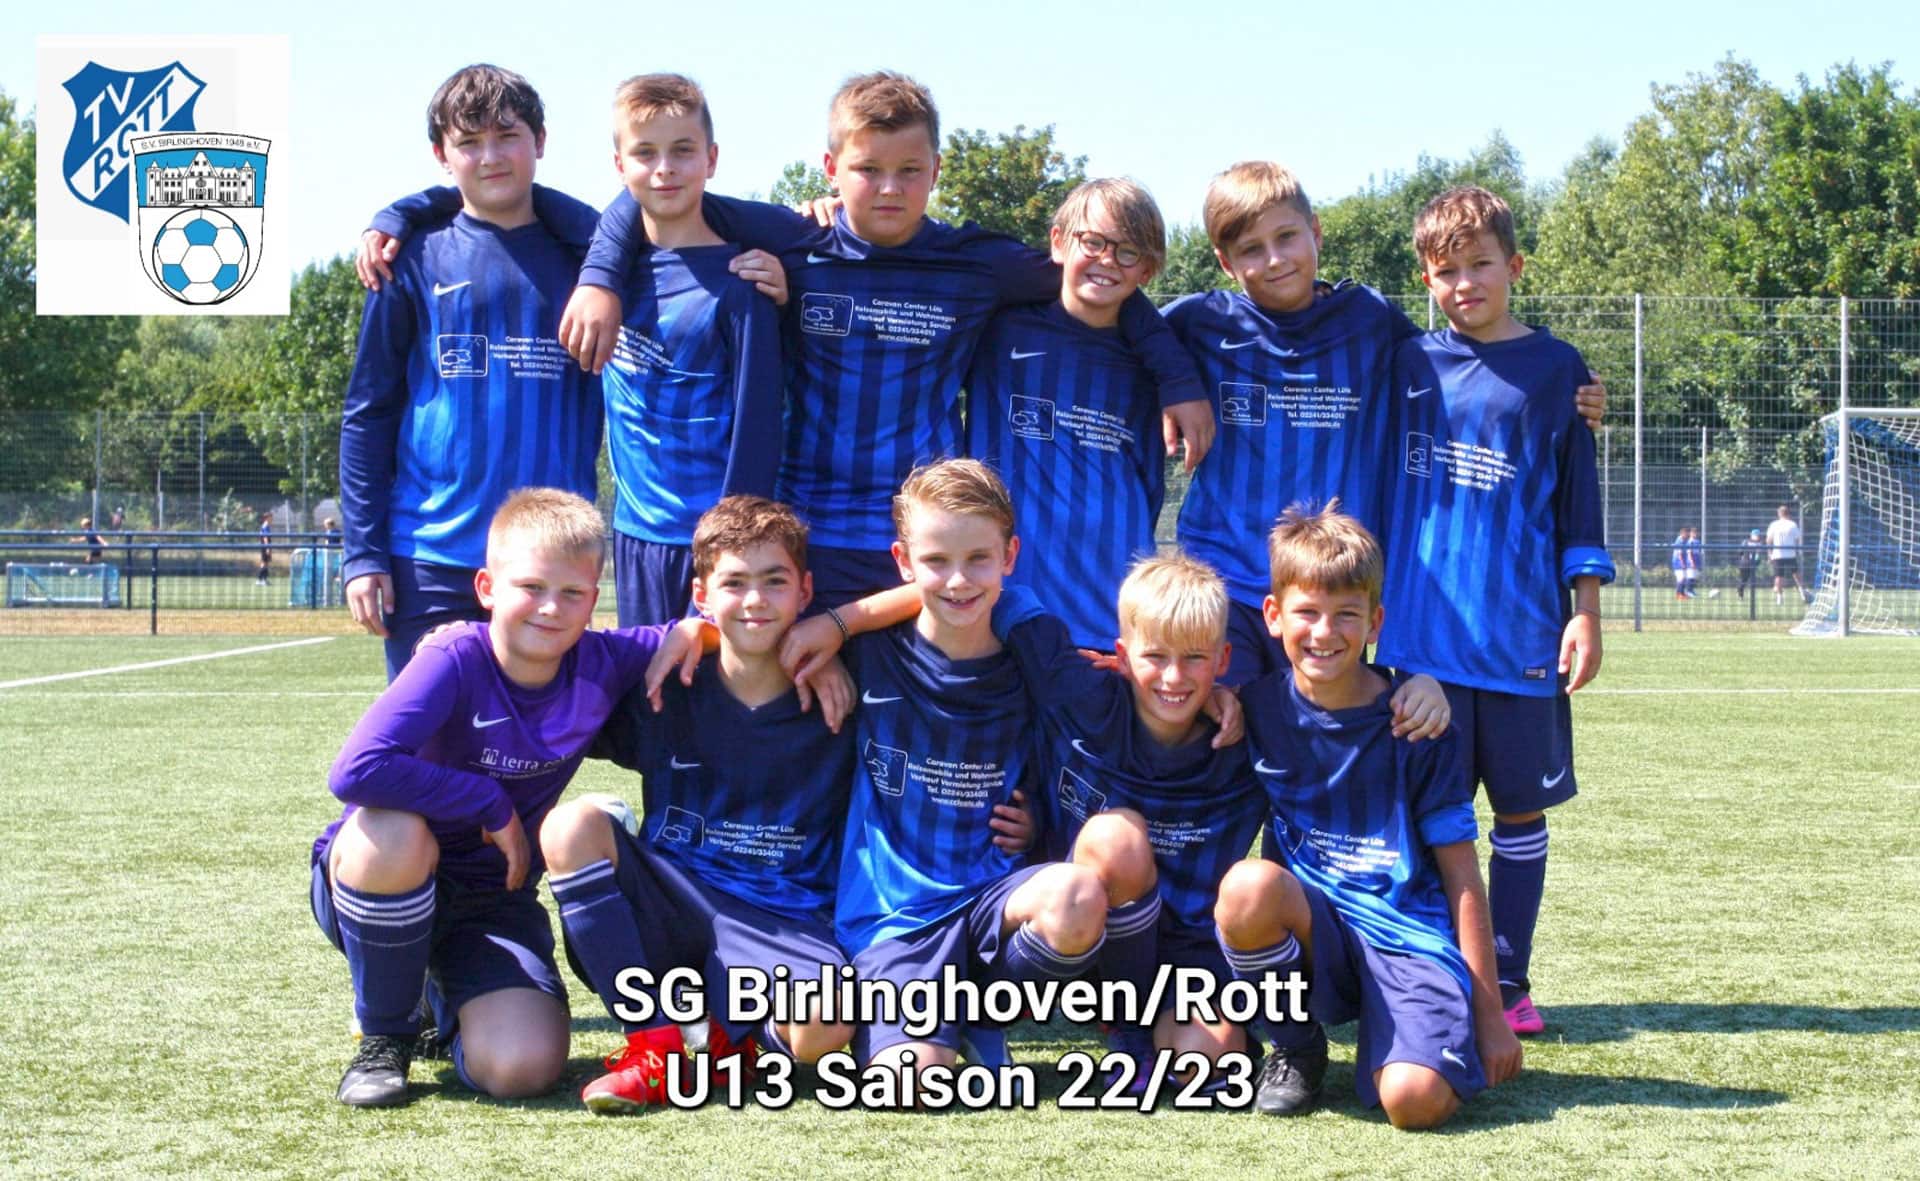 sv-birlinghoven-u13-fussballverein-sportverein-sankt-augustin-juniorion-u13-mannschaft